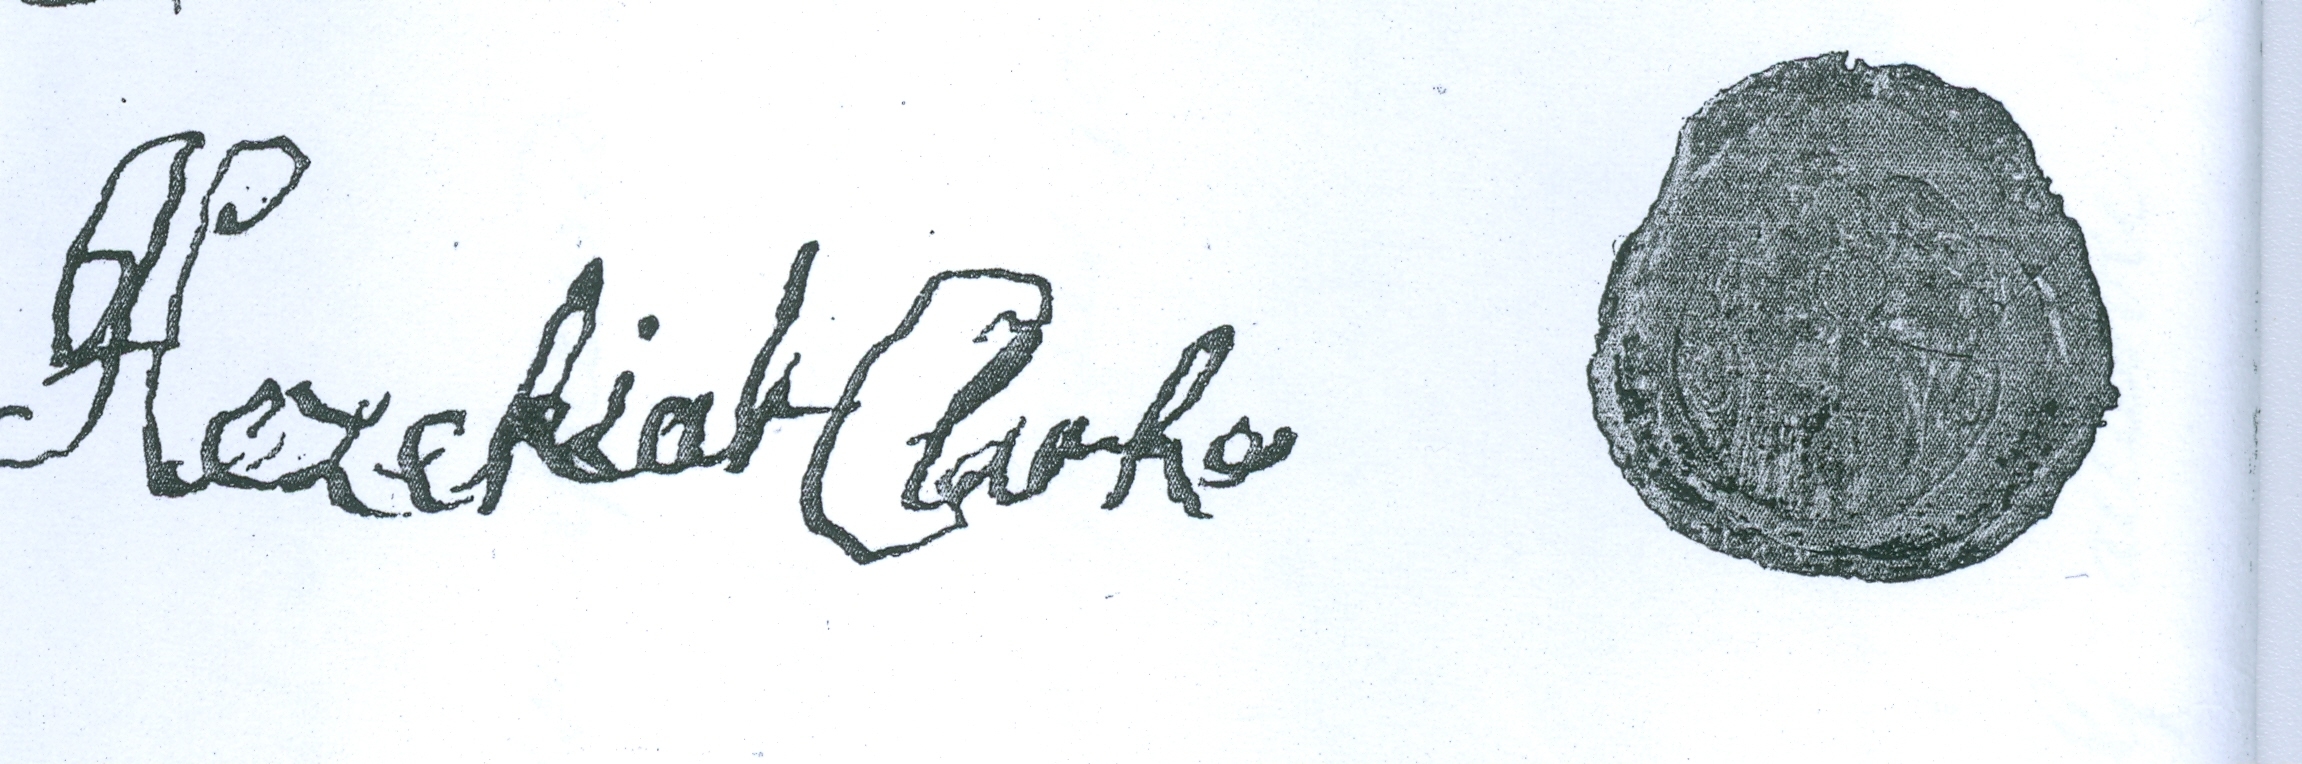 H Clarke signature